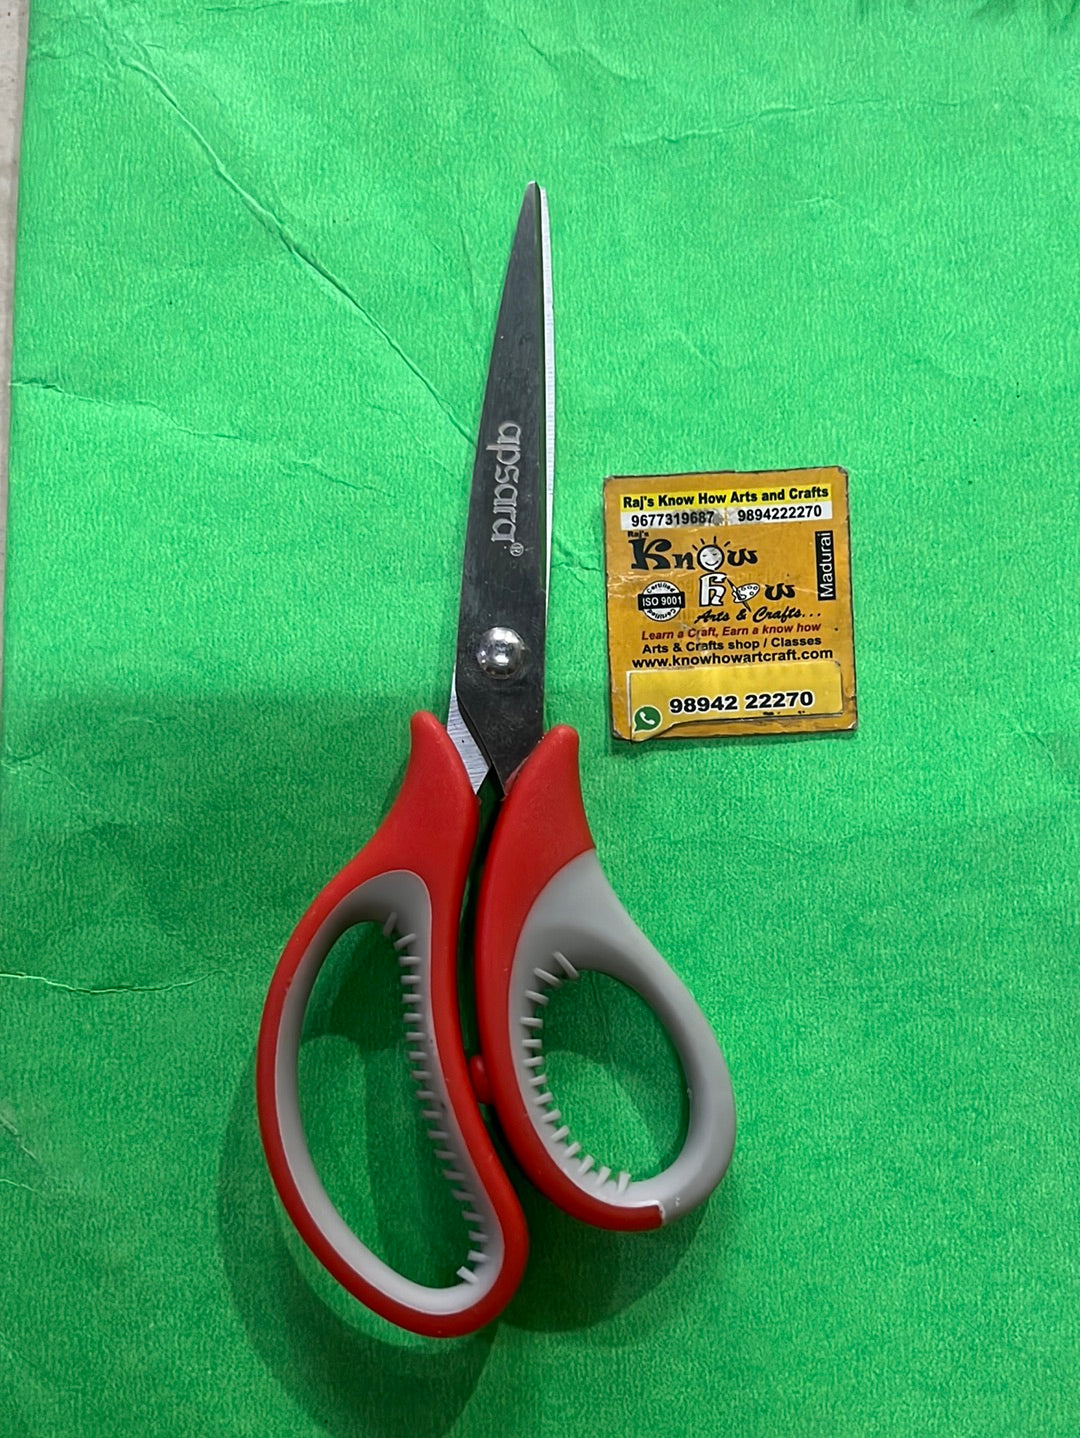 Apsara Blunt end Kids scissors - small